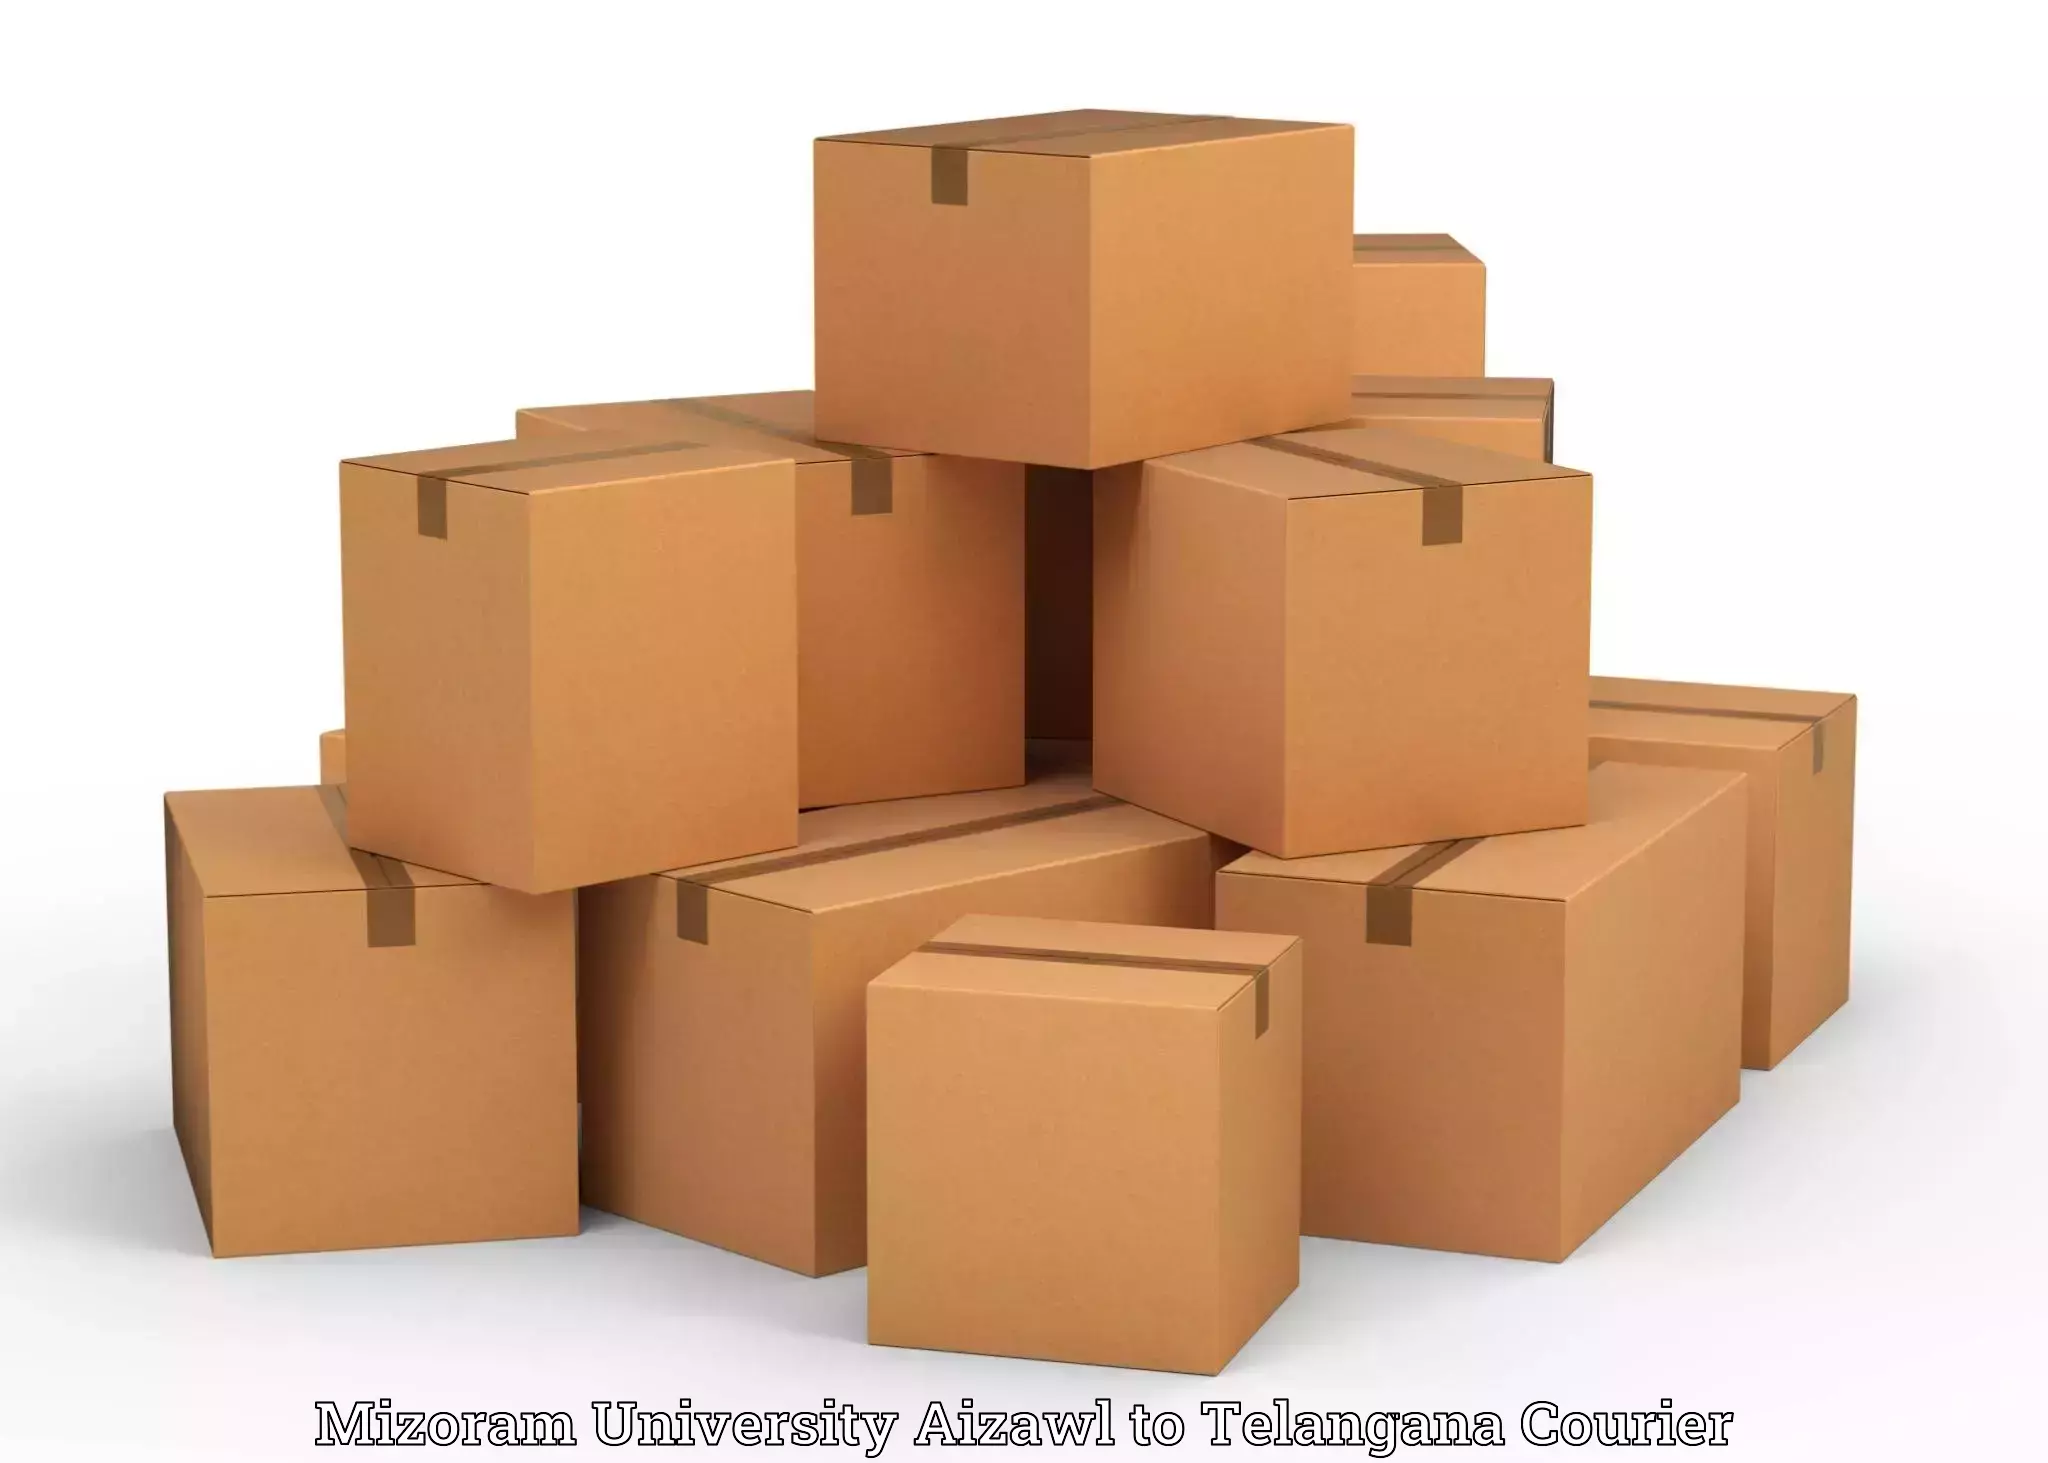 Professional packing services Mizoram University Aizawl to Bhupalpally